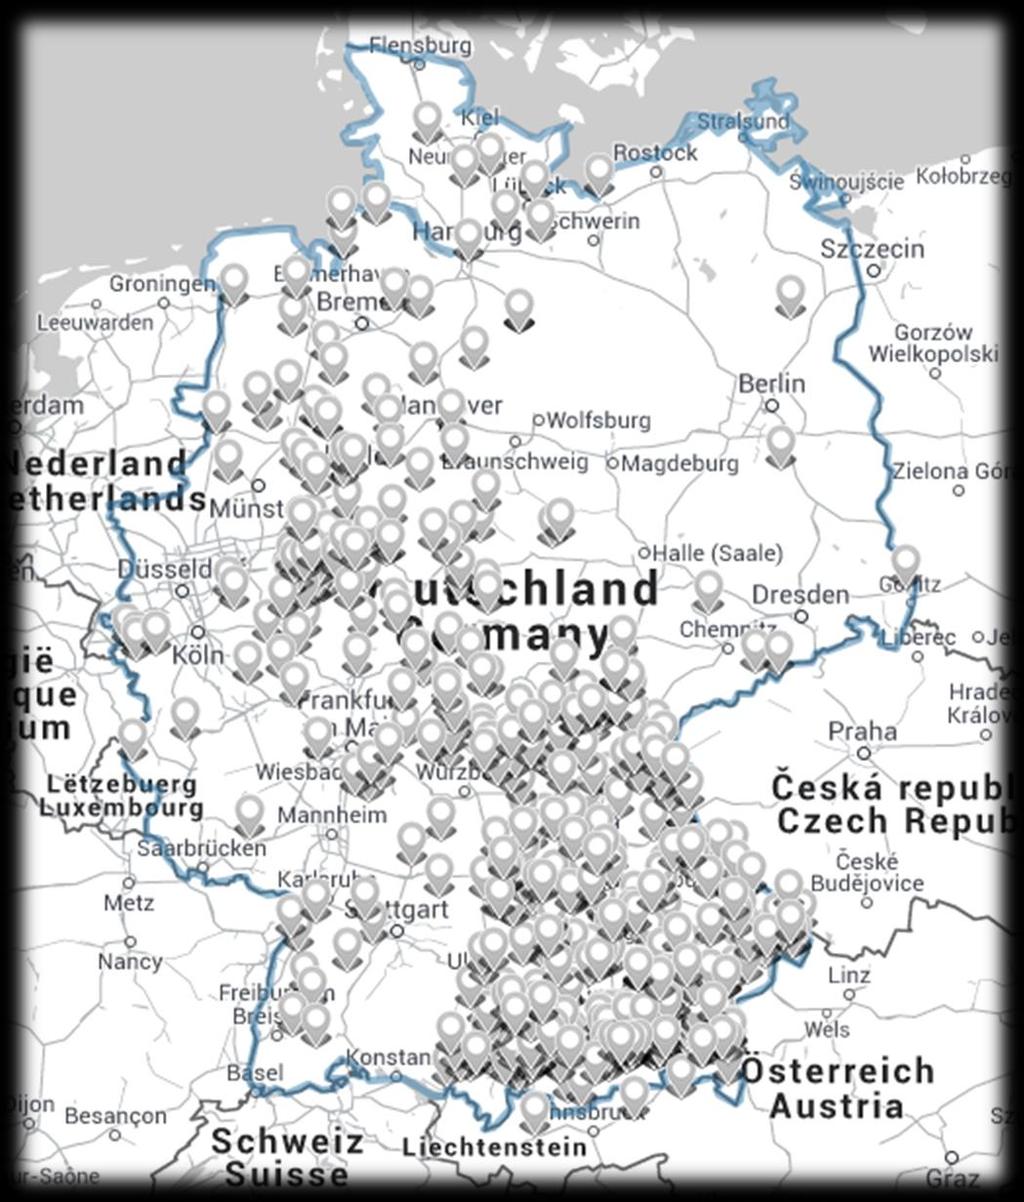 Berlin Mitglieder: bundesweit rd. 540 Betriebe mit rd. 13.500 Mitarbeitern, ca. 80% des deutschen Gesamteinschnittes rd. 85% der Betriebe verarbeiten Nadelholz (inkl.